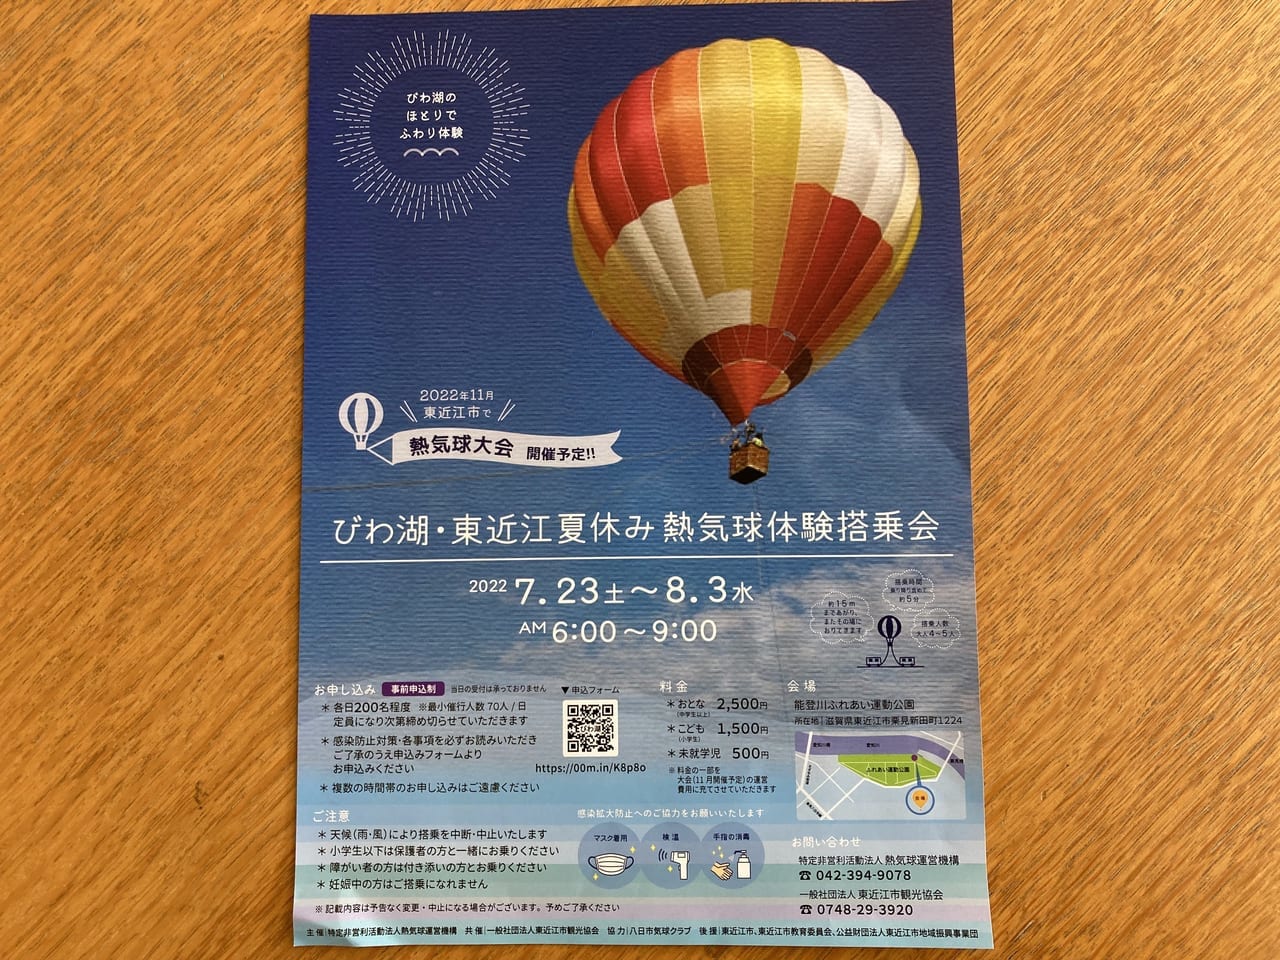 びわ湖・東近江夏休み熱気球体験搭乗会のおしらせ